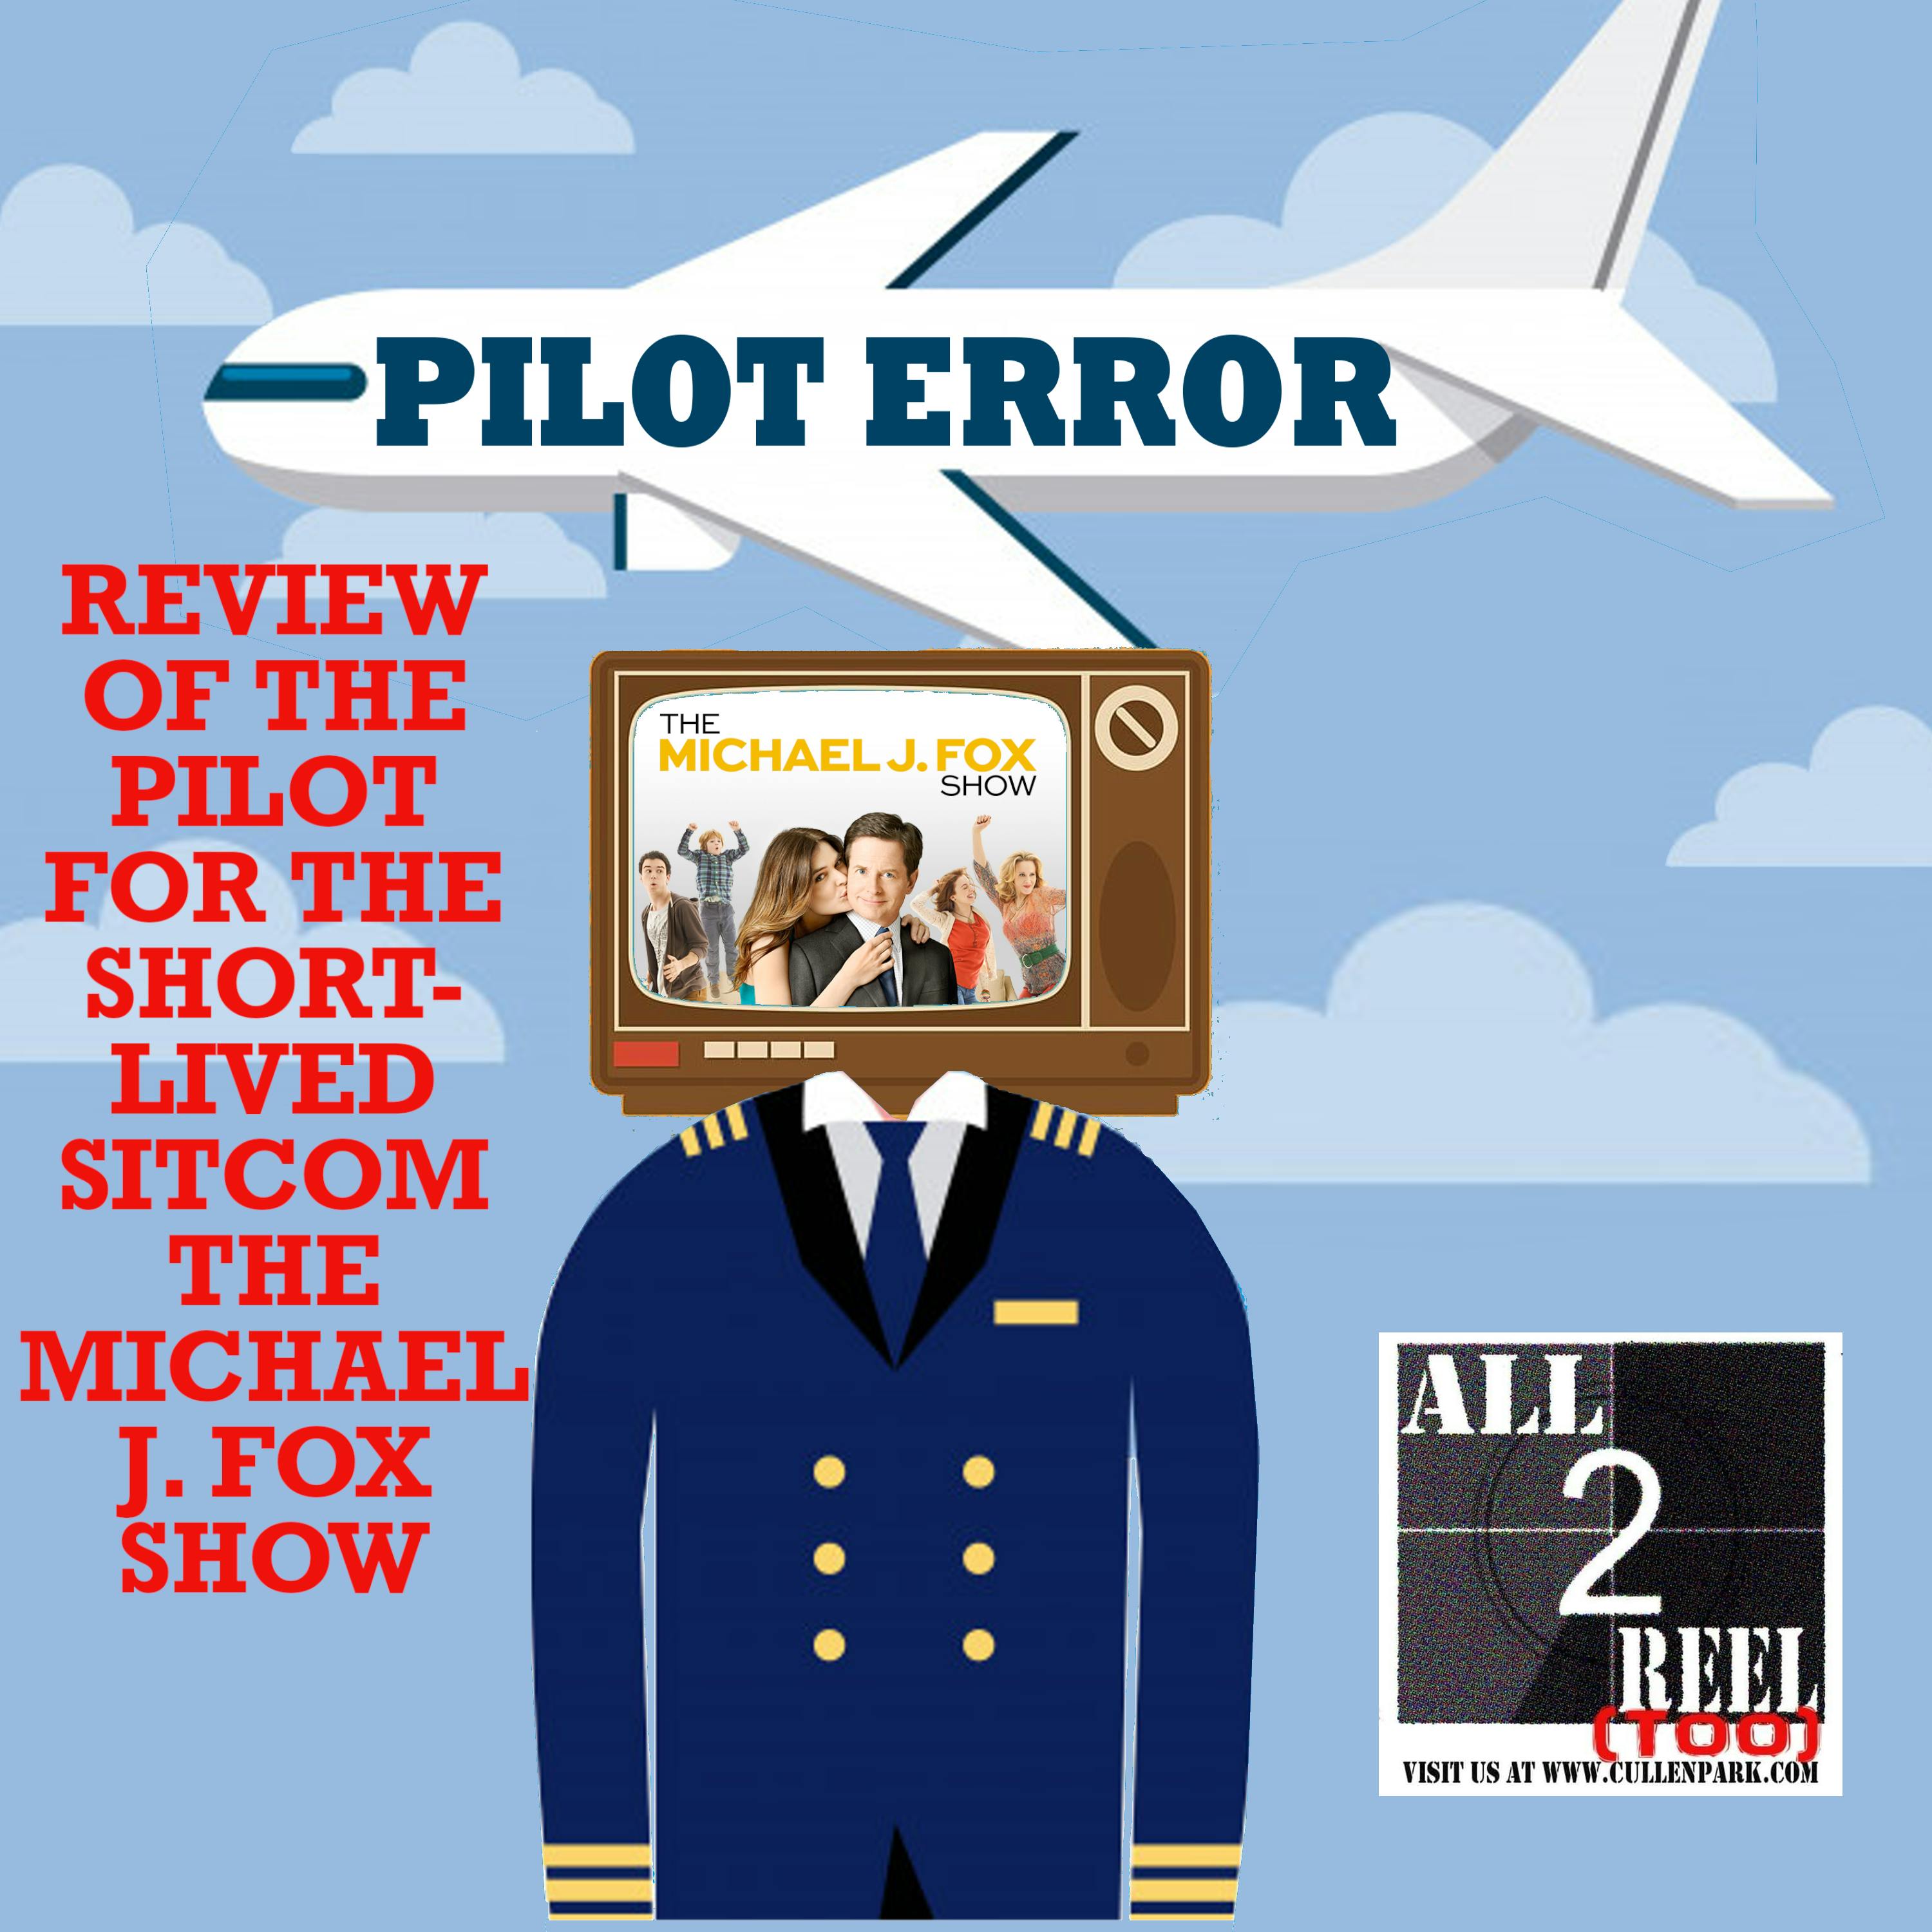 The Michael J. Fox Show (2013) - PILOT ERROR REVIEW Image